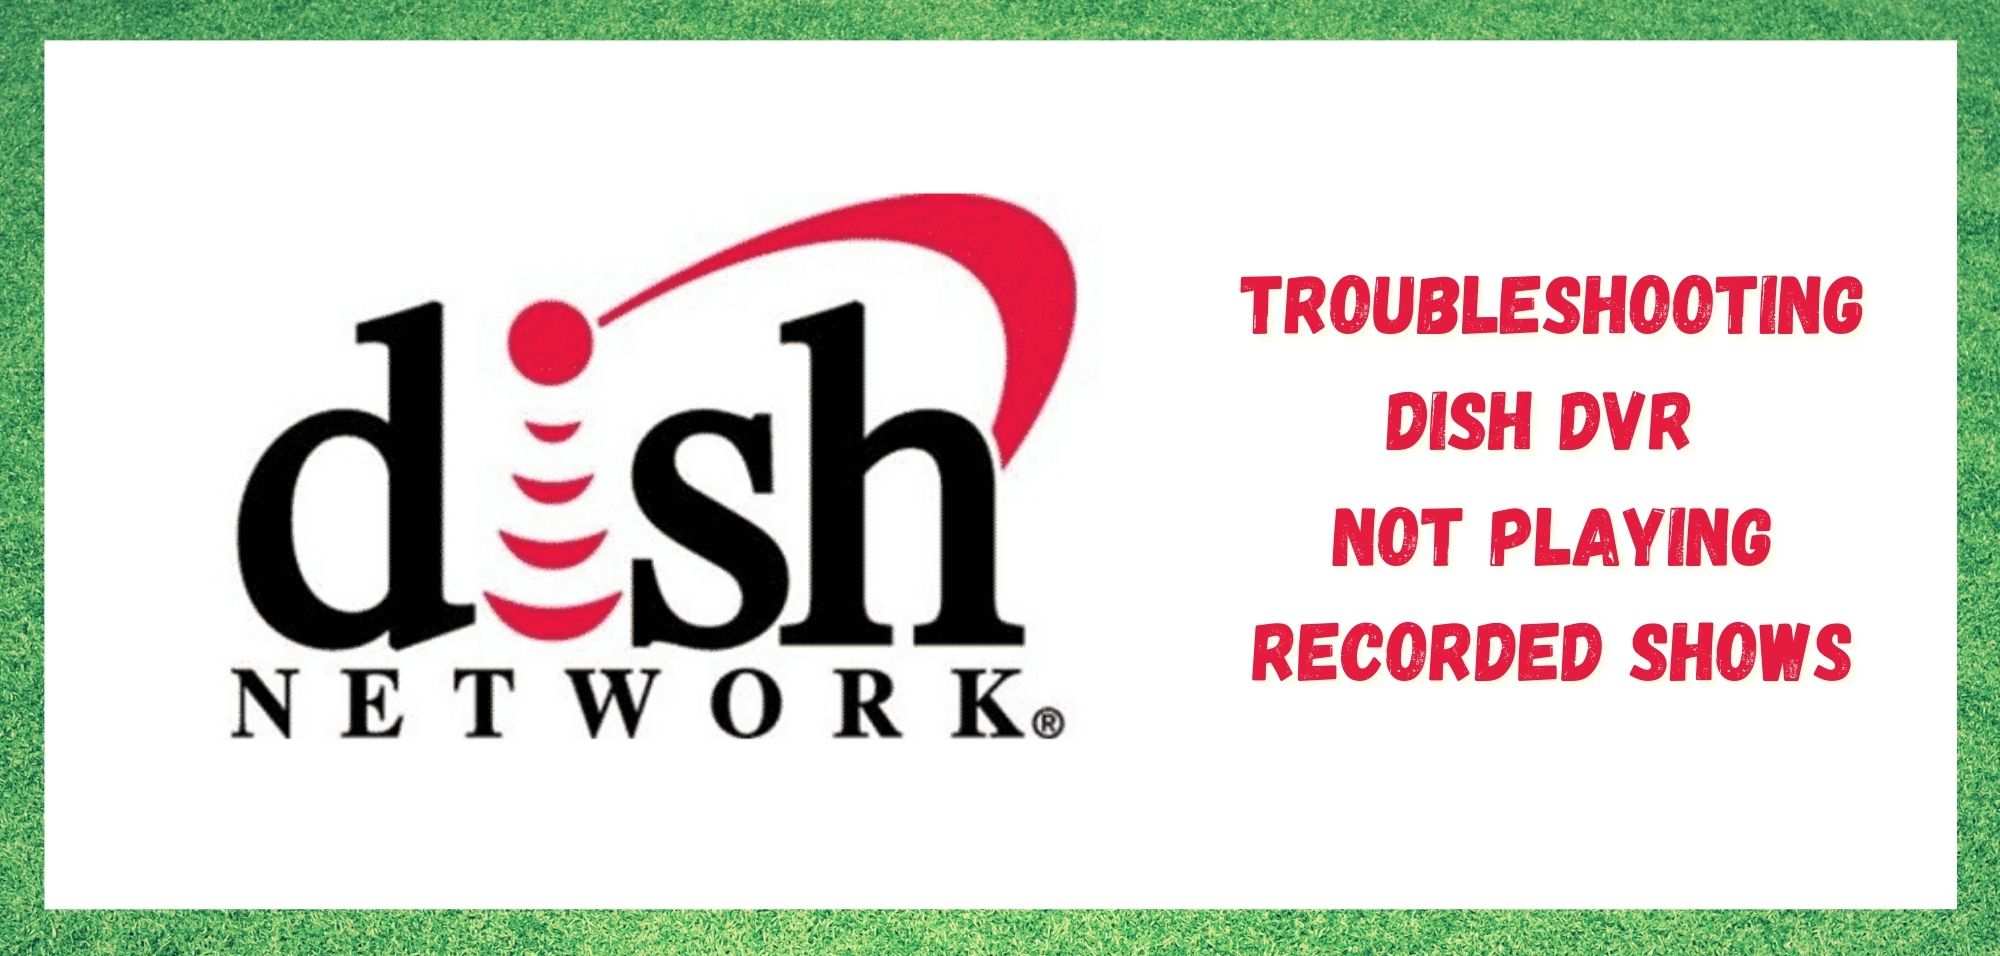 Le DVR de Dish ne lit pas les émissions enregistrées : 3 façons de résoudre le problème